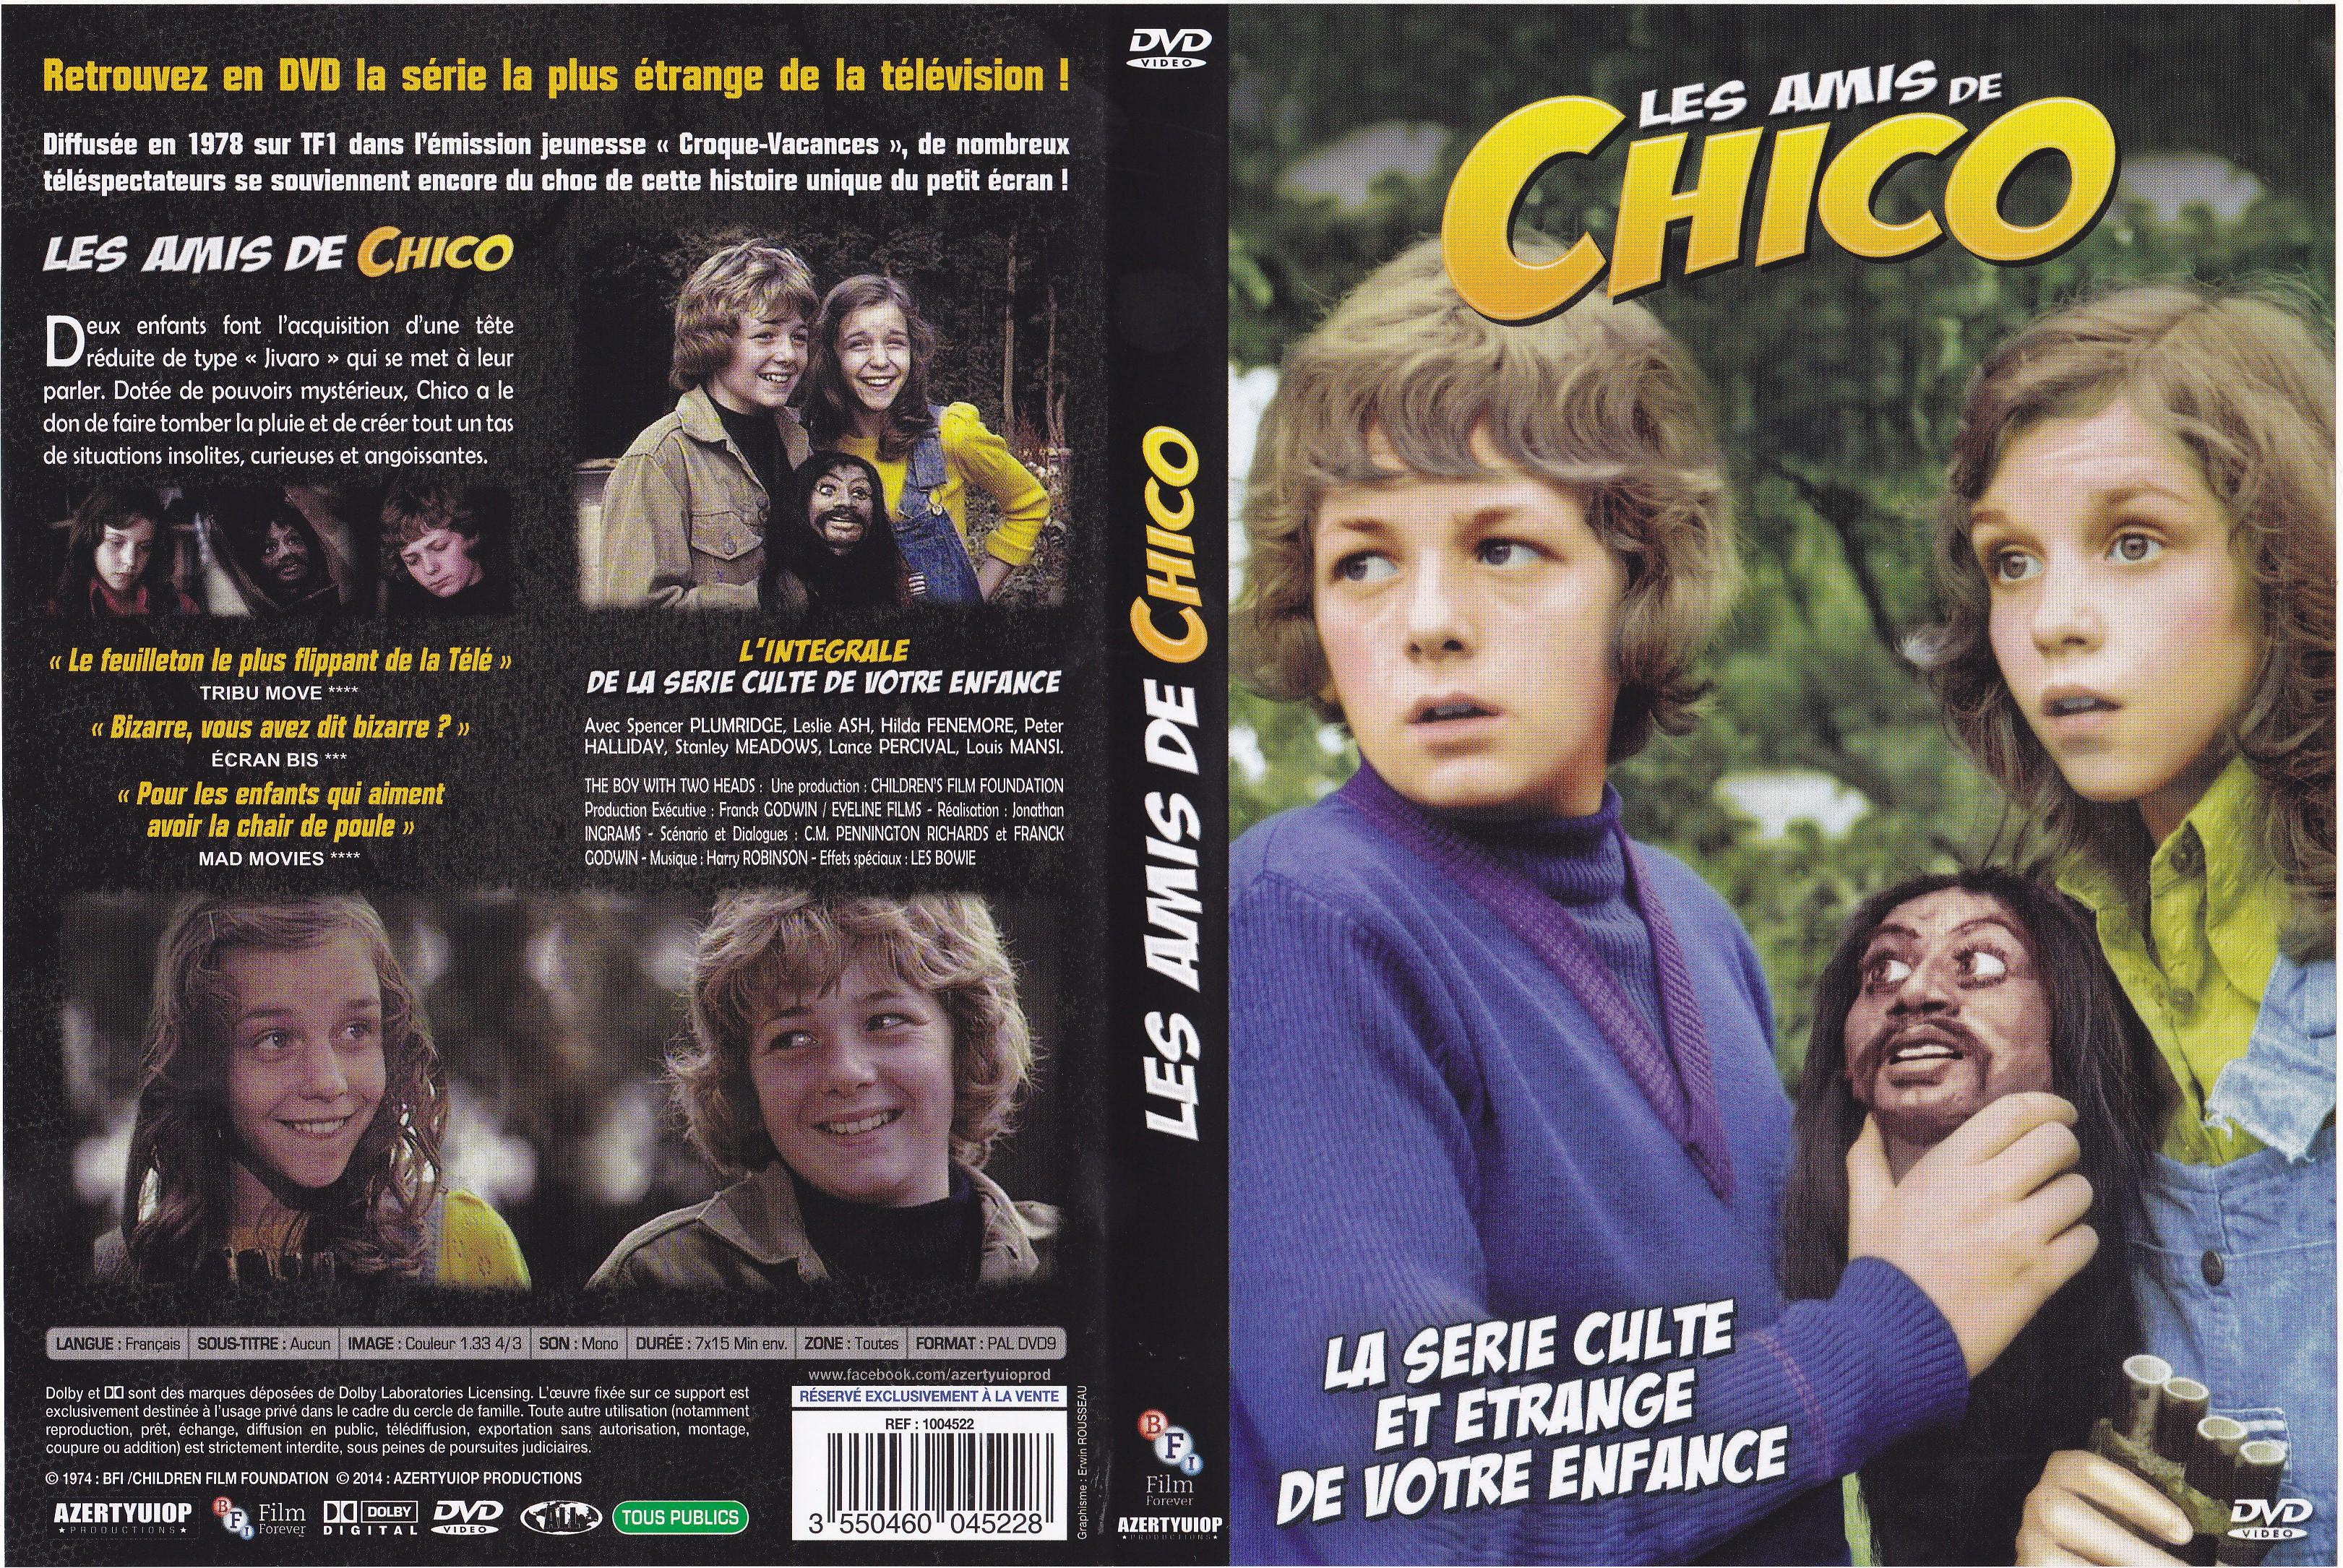 Jaquette DVD Les Amis de Chico v2